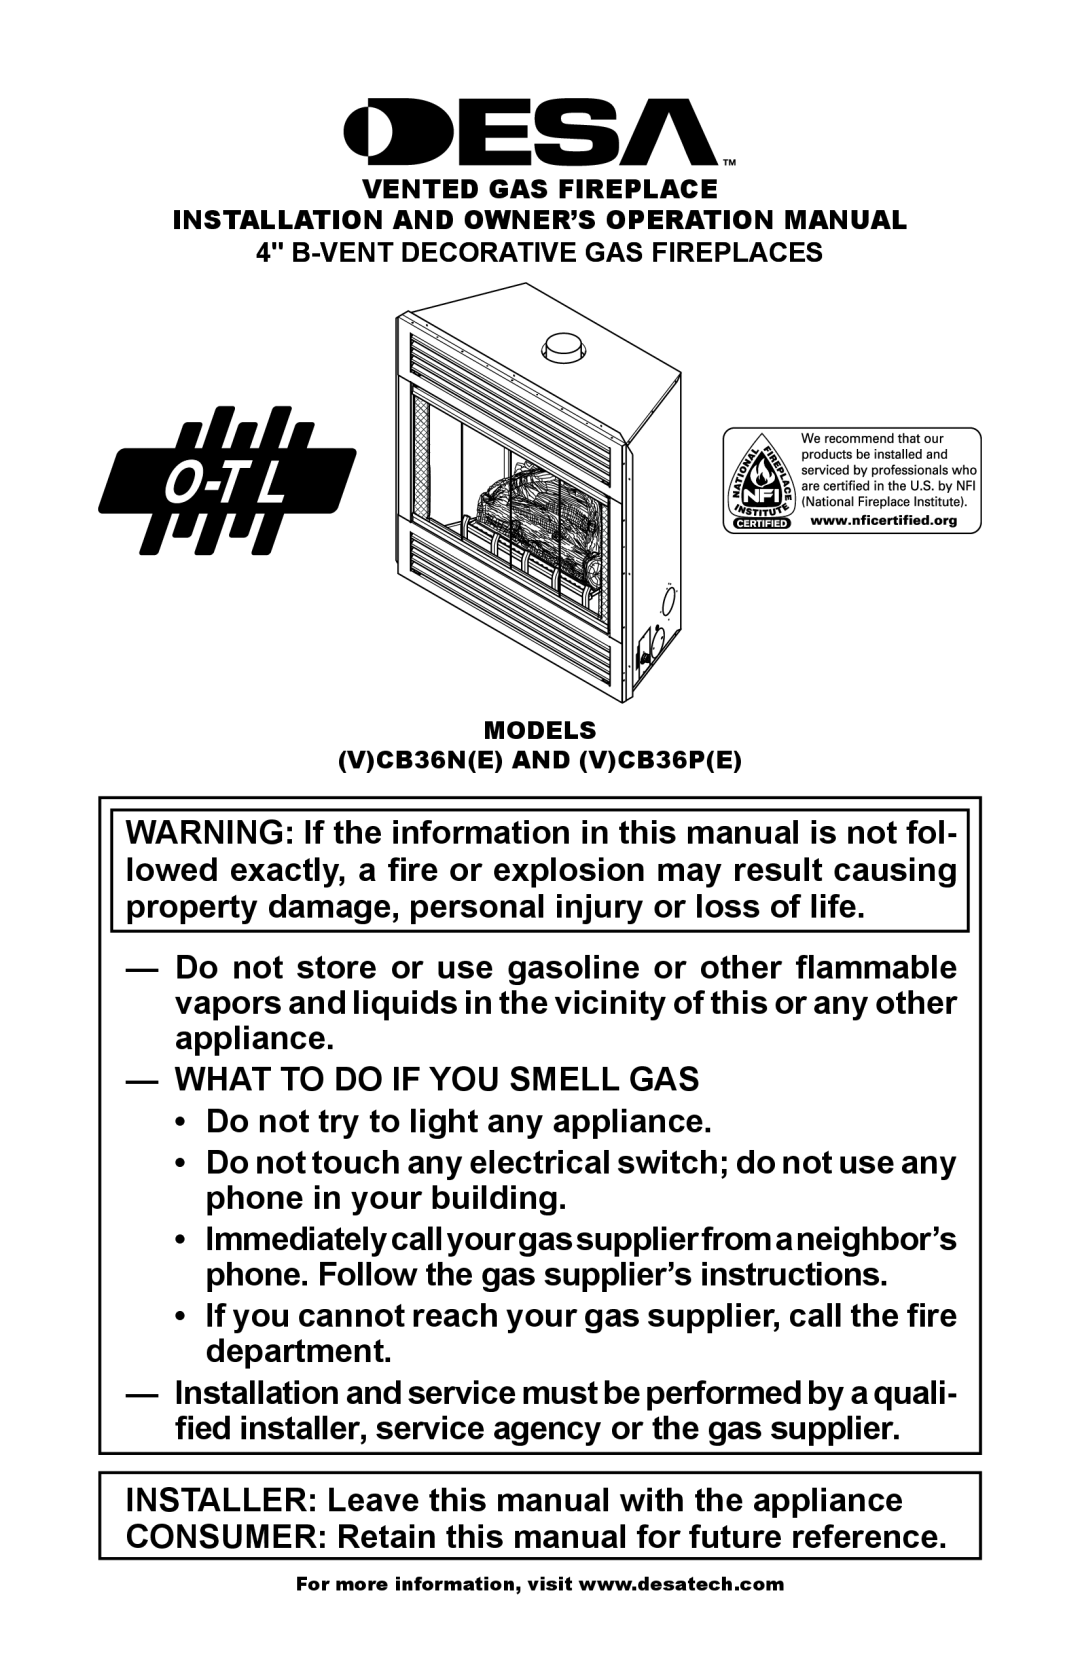 Desa (V)CB36N(E), (V)CB36P(E) operation manual What To Do If You Smell Gas 